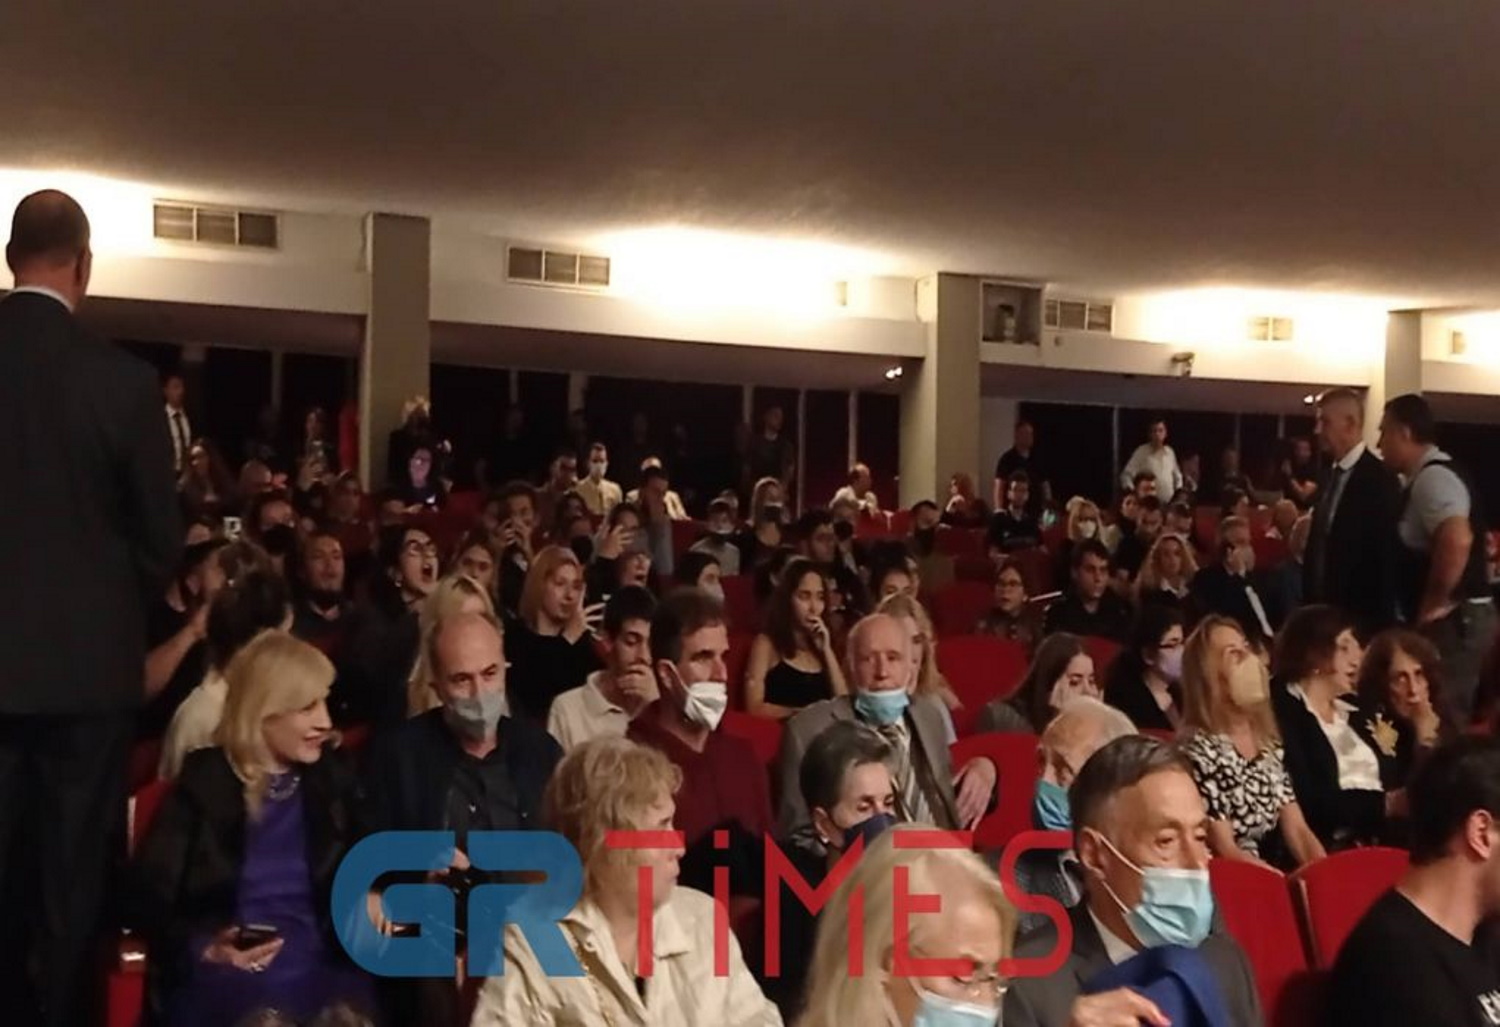 ΑΠΘ: Ένταση μεταξύ φοιτητών και πρύτανη σε επίσημη εκδήλωση παρουσία της Κατερίνας Σακκελαροπούλου